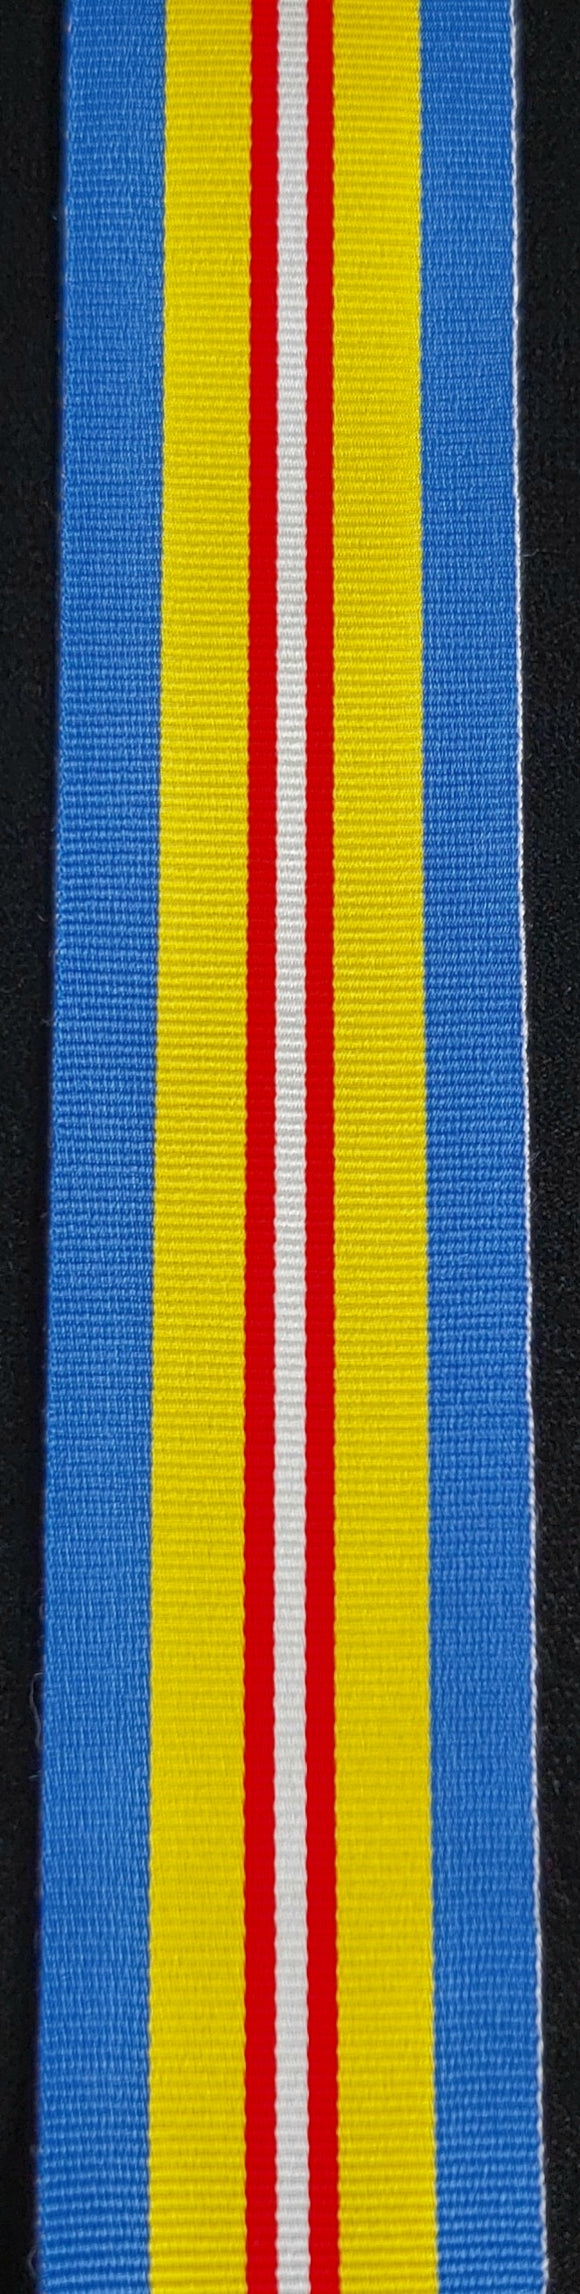 Ribbon, Korea Volunteer Service Medal